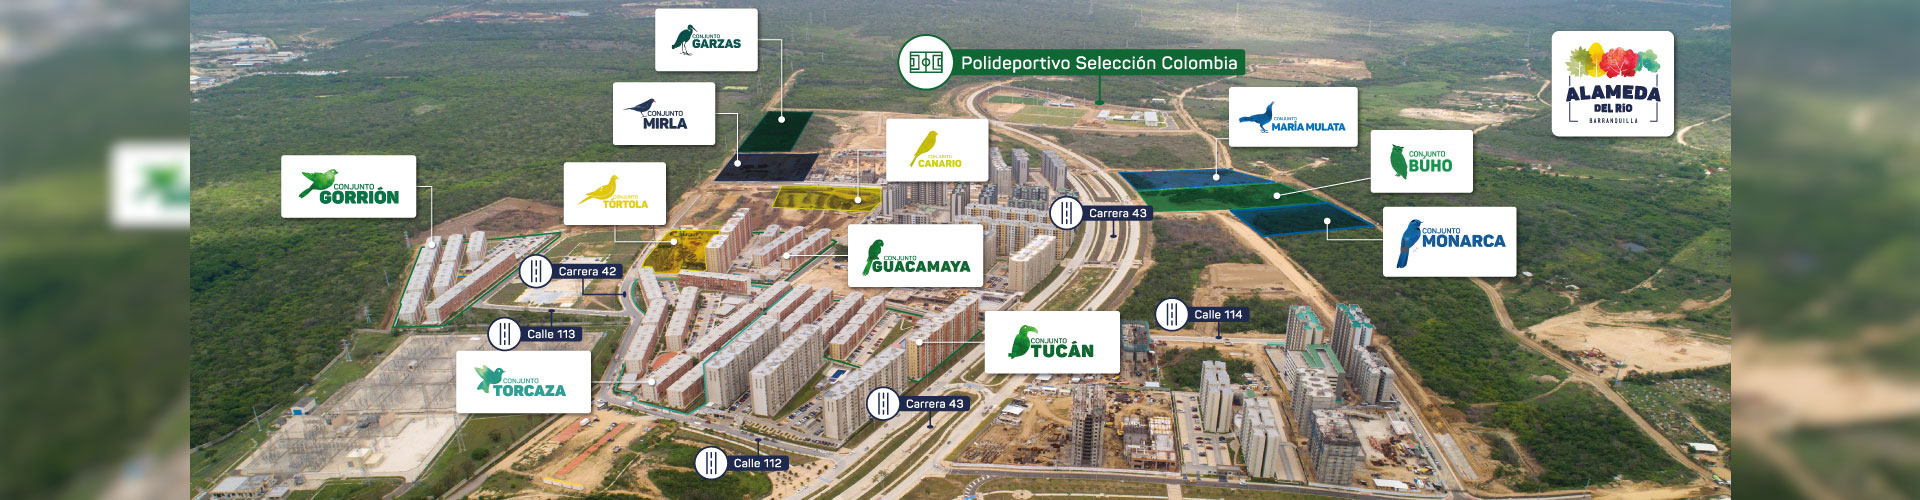 Alameda del Rio, proyecto de vivienda en Barranquilla Constructora Bolívar